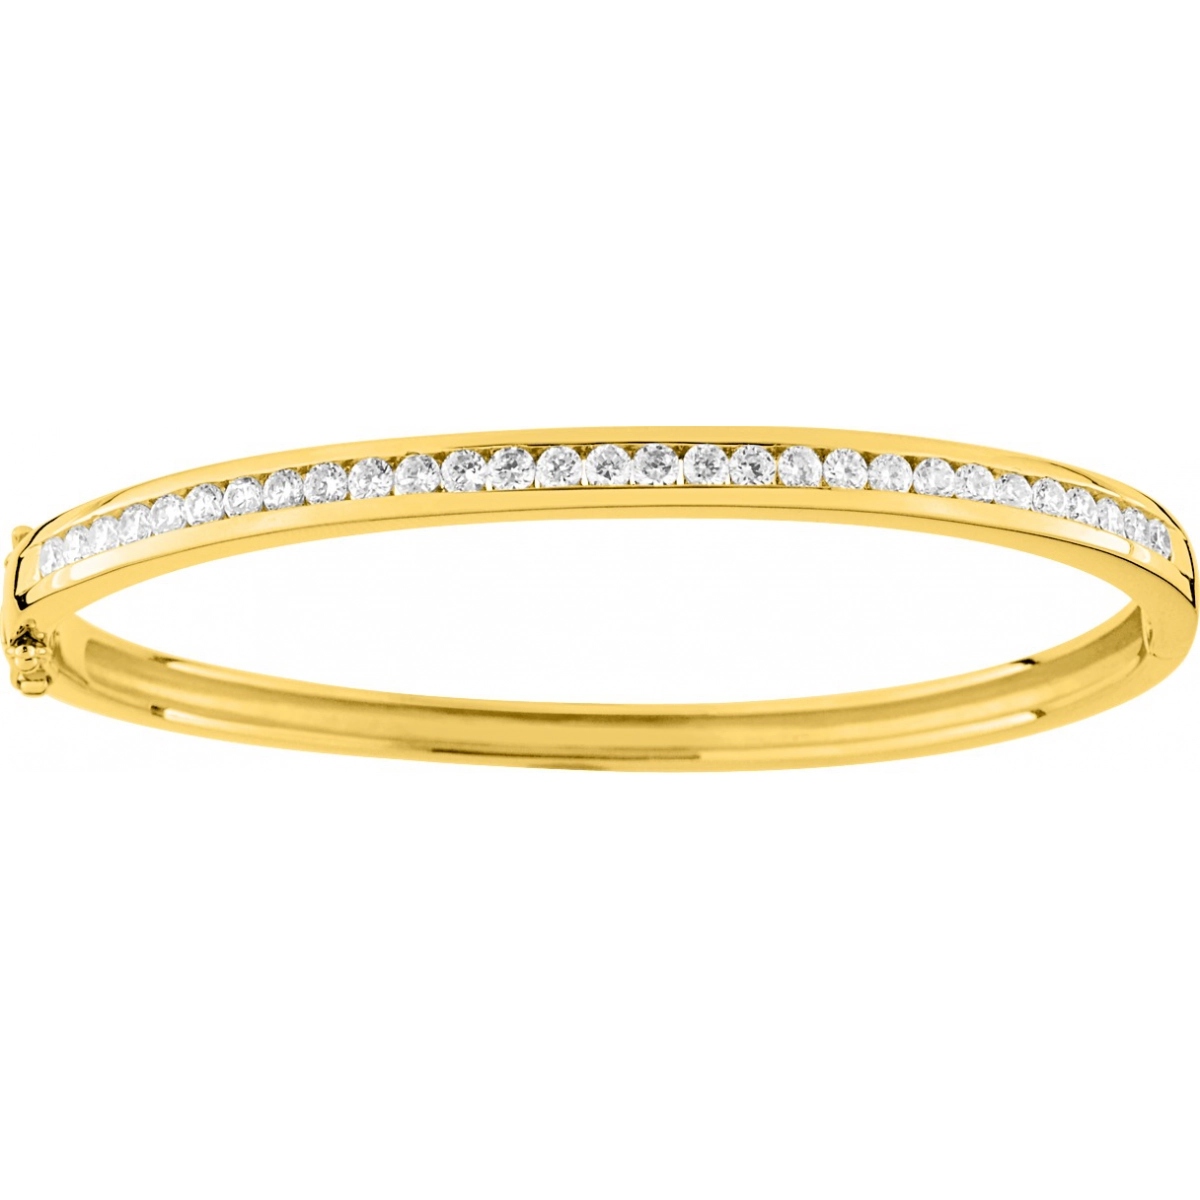 Bracelet w. cz gold plated Brass  Lua Blanca  PSBC73Z.0